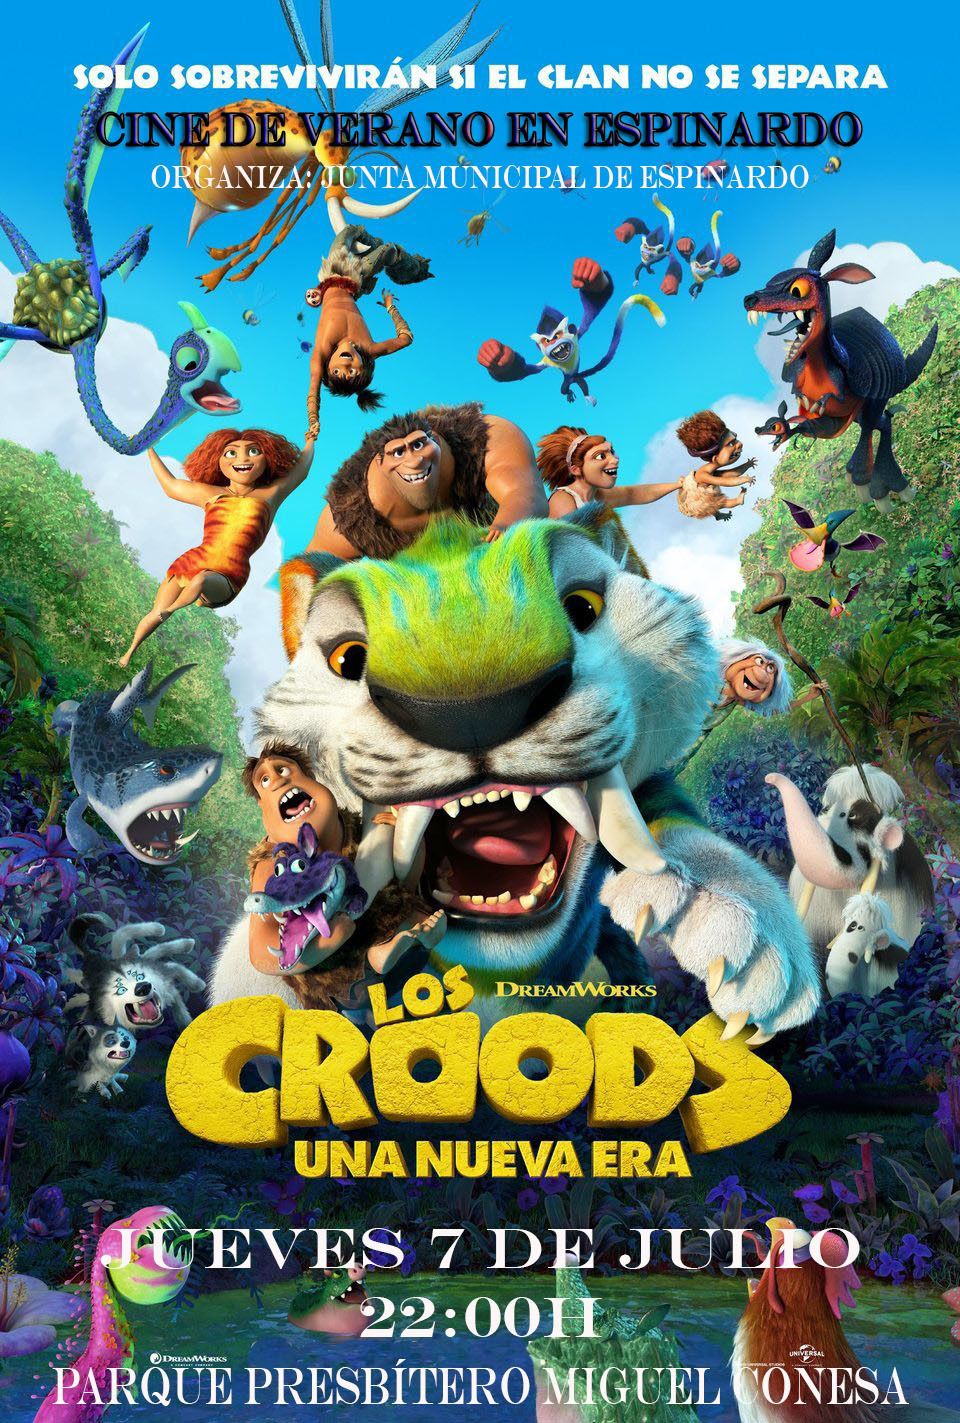 2022-07-07 Cine de verano en Espinardo - Los Croods una nueva era